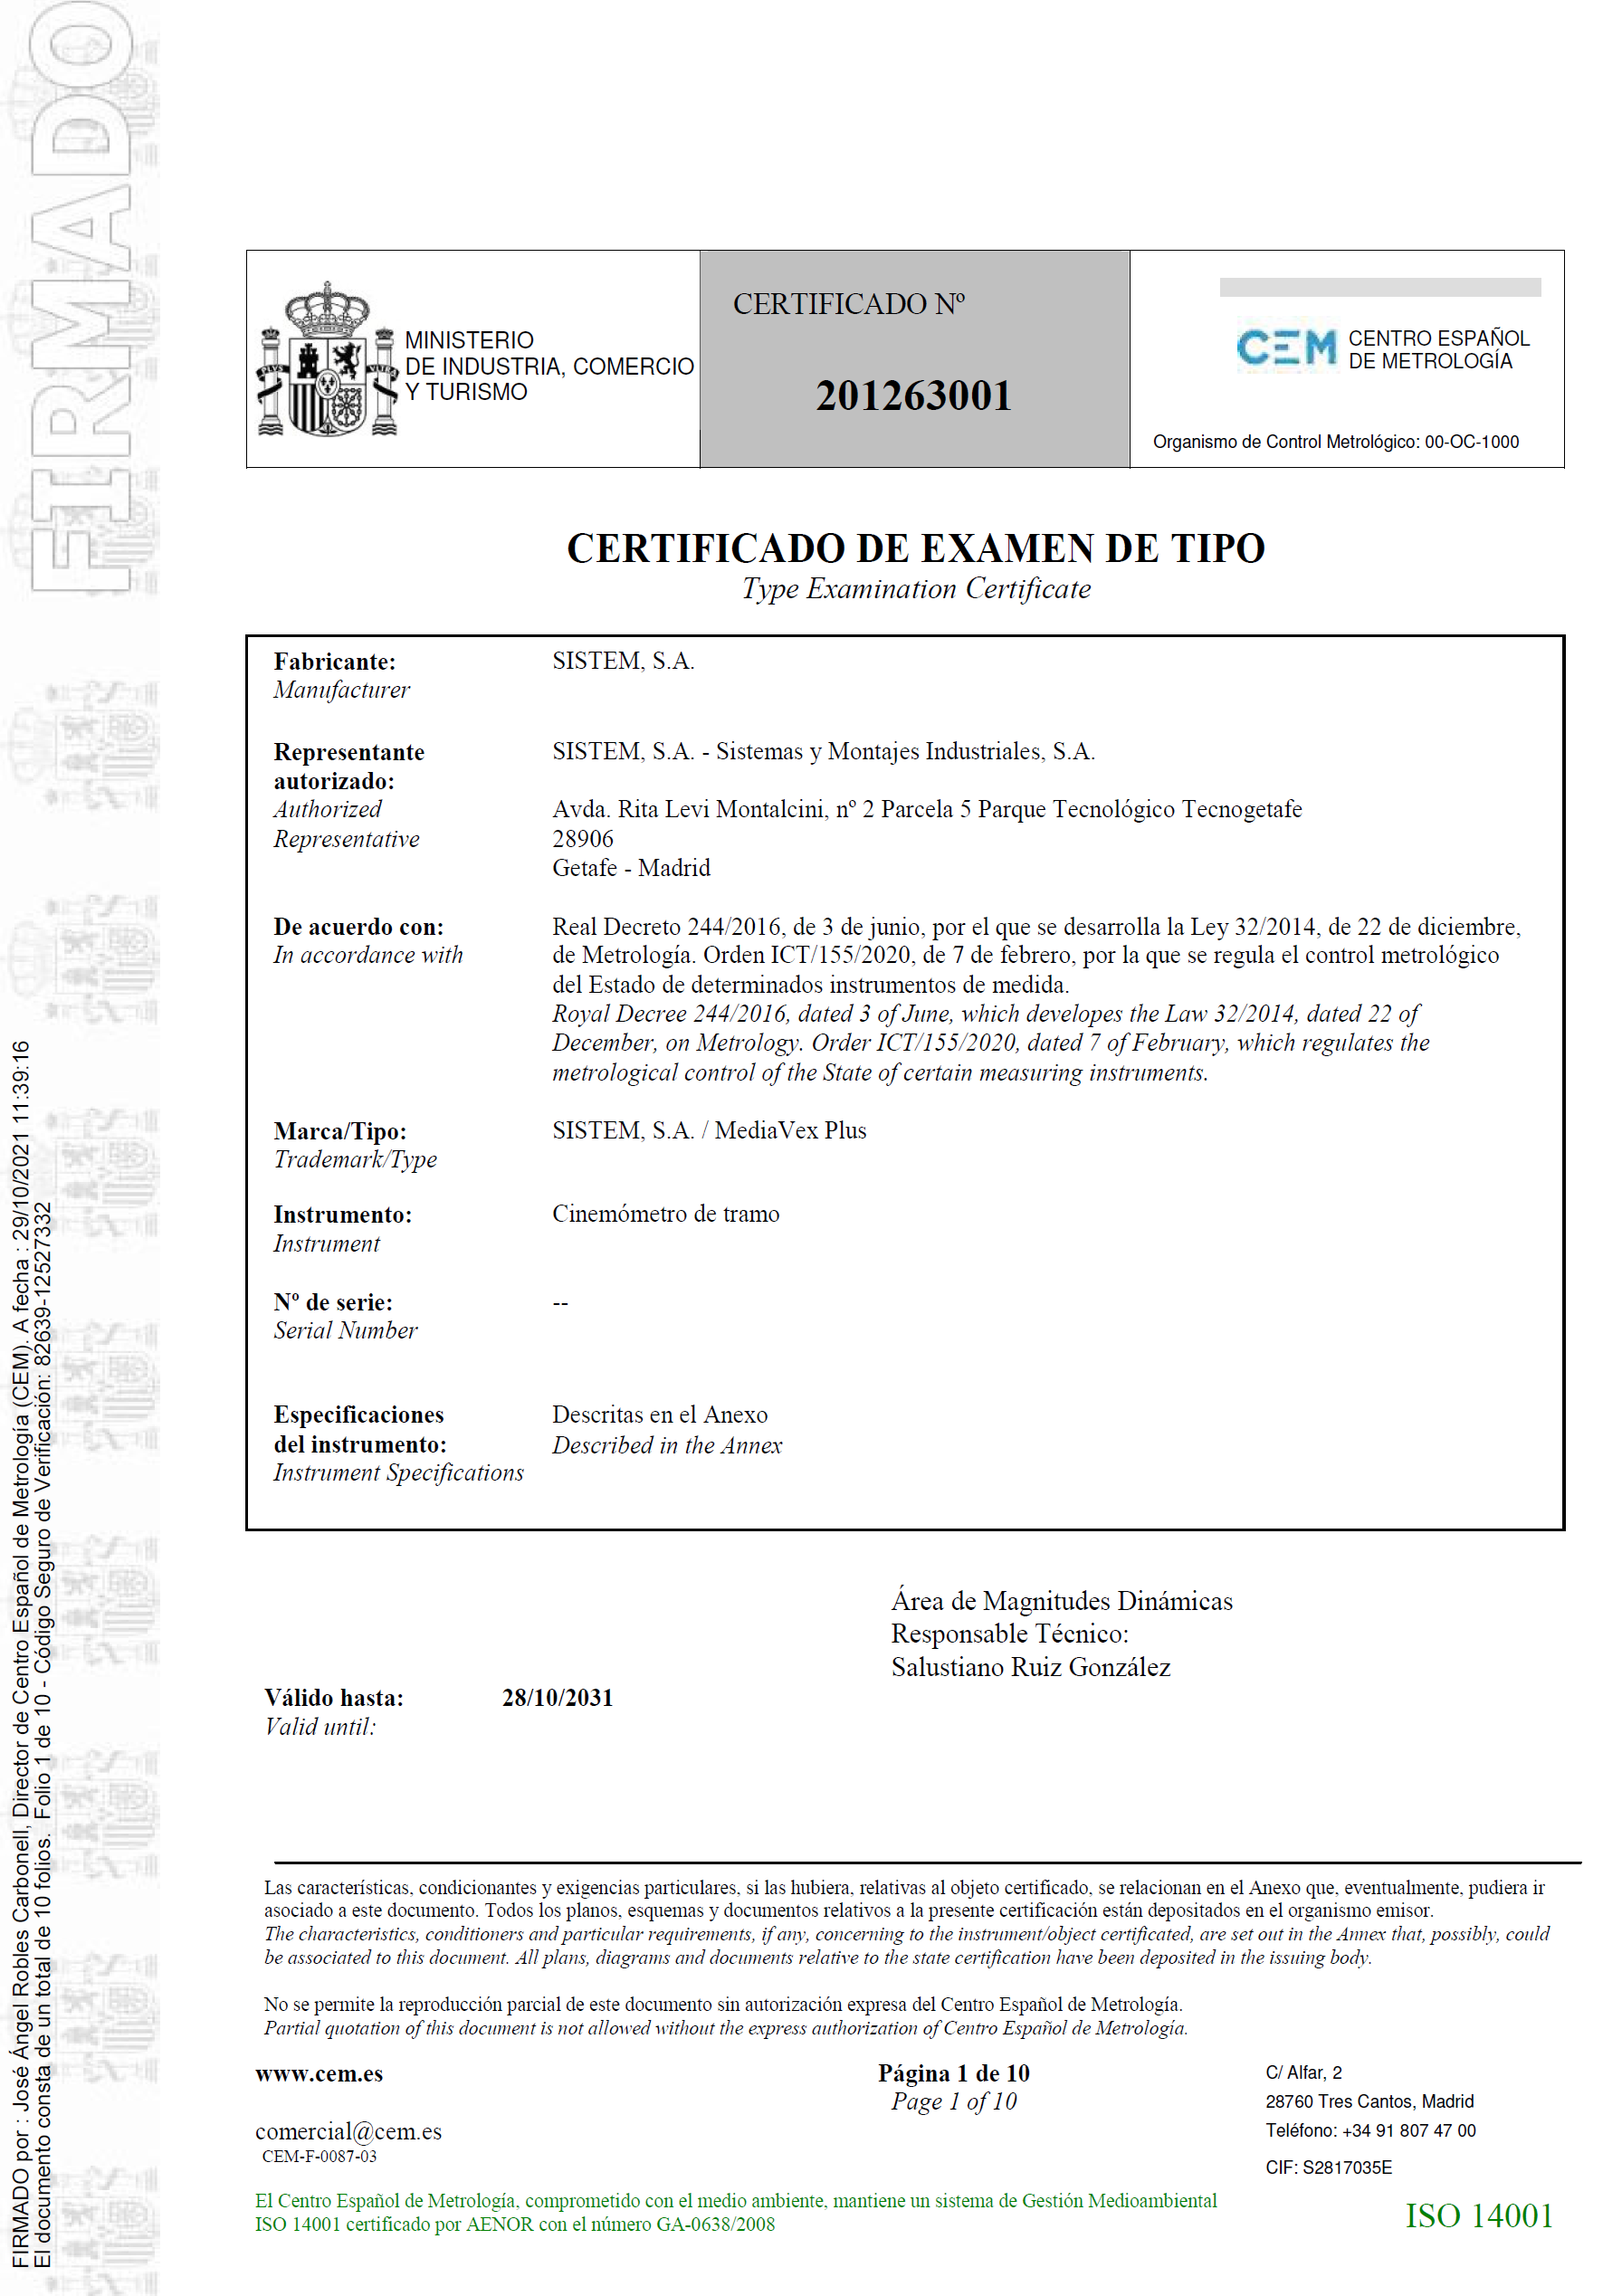 Certificado de examen de tipo nº 201263001